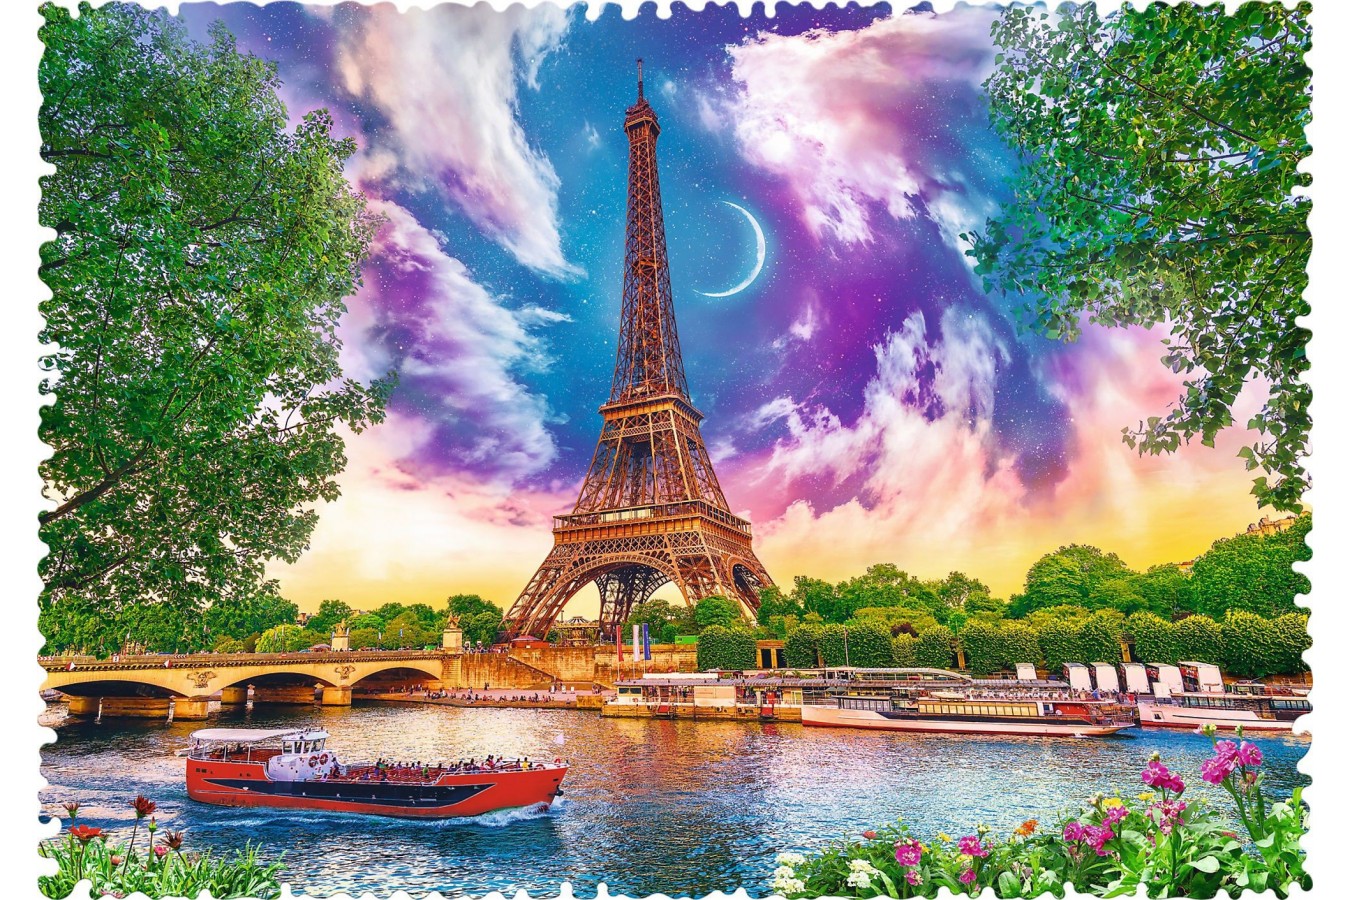 Puzzle Trefl - Crazy Shapes - Sky over Paris, 600 piese dificile (11115)